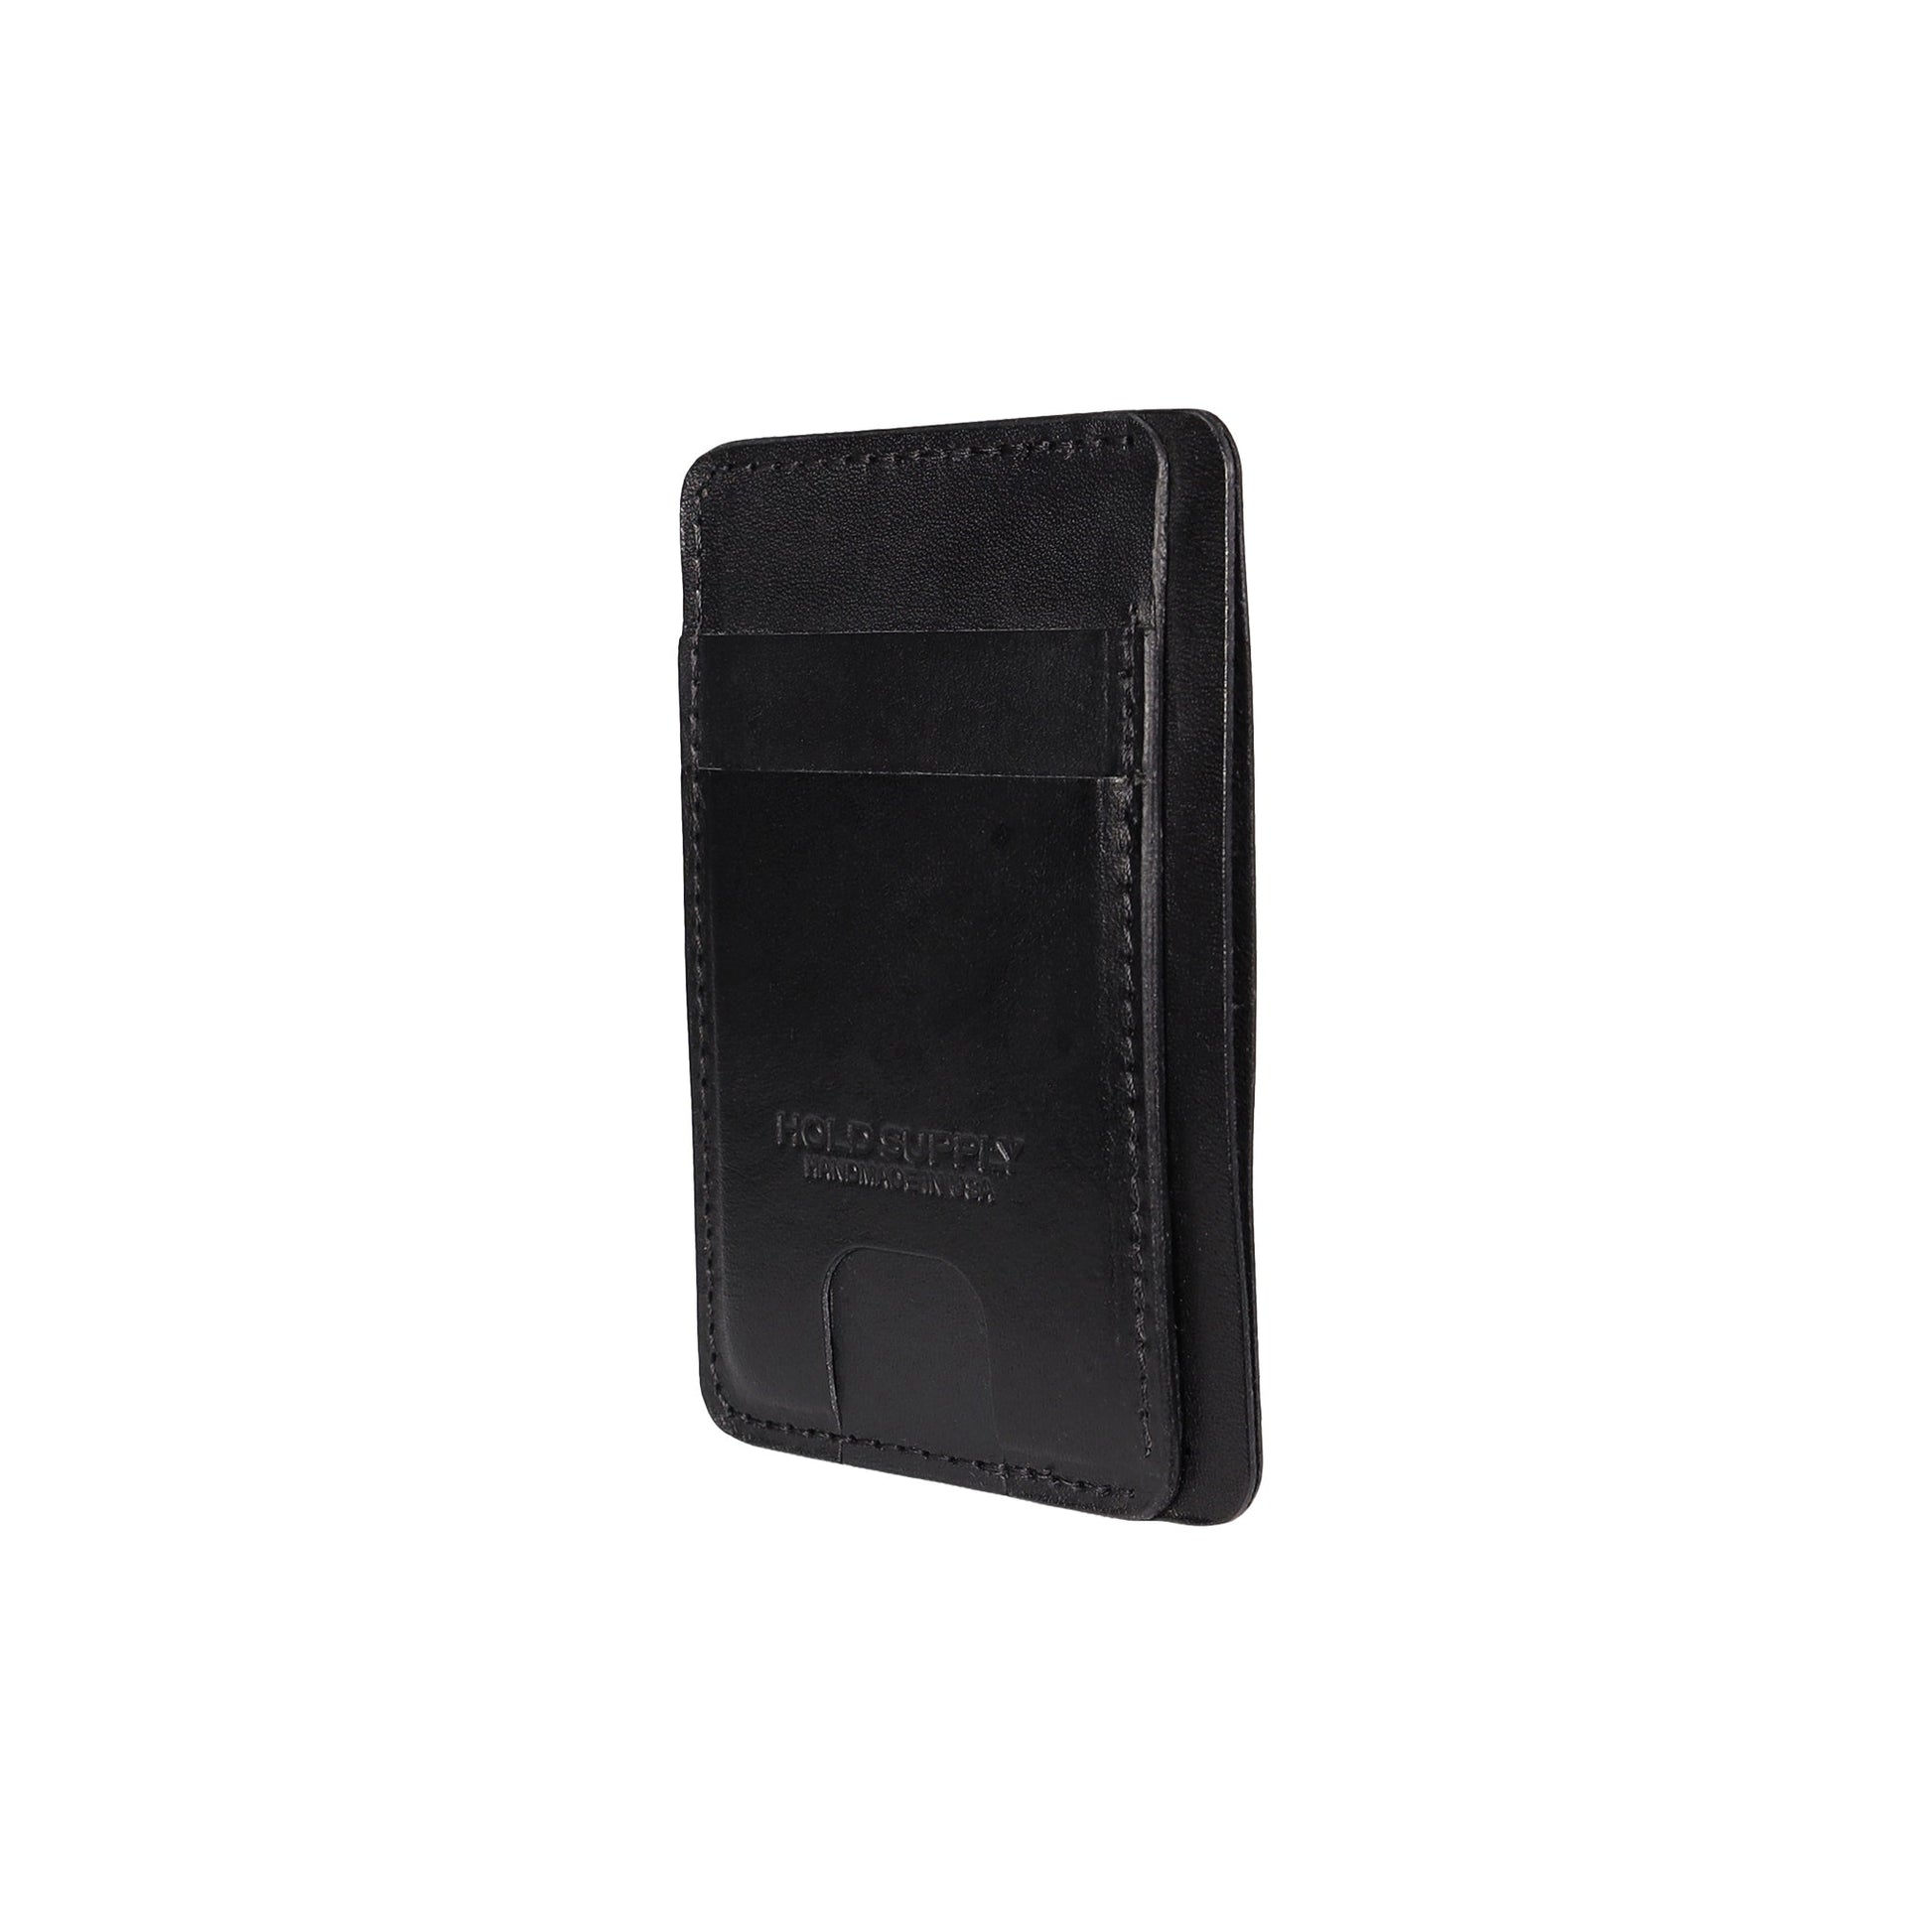 Black leather Front Pocket Wallet